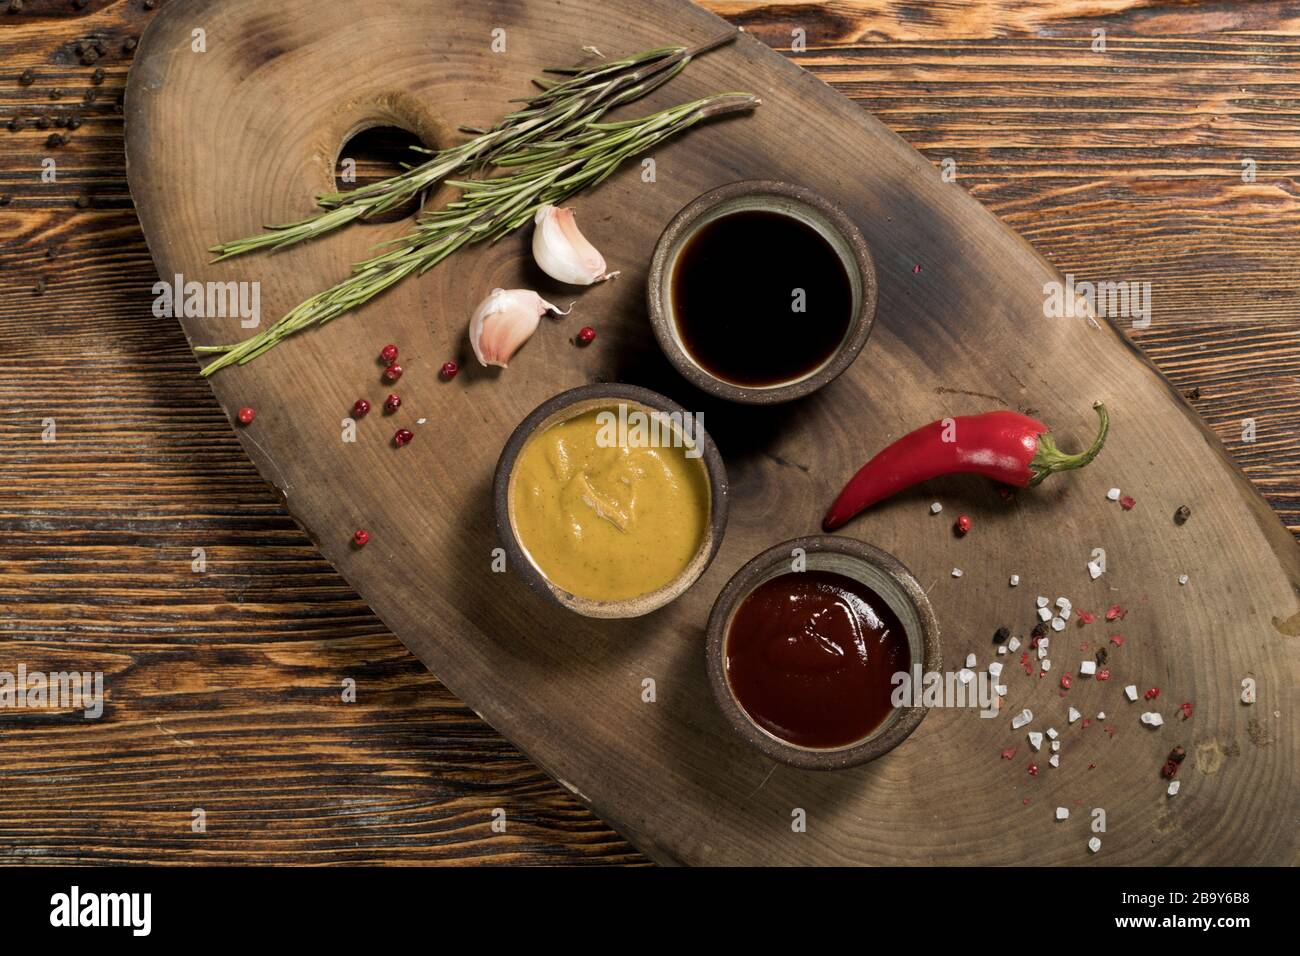 Ingredientes, ajo, romero, pimienta de Chile, salsa de tomate y soja, mostaza, especias, pimienta roja y negra, sal sobre un hermoso fondo de madera oscura, Foto de stock